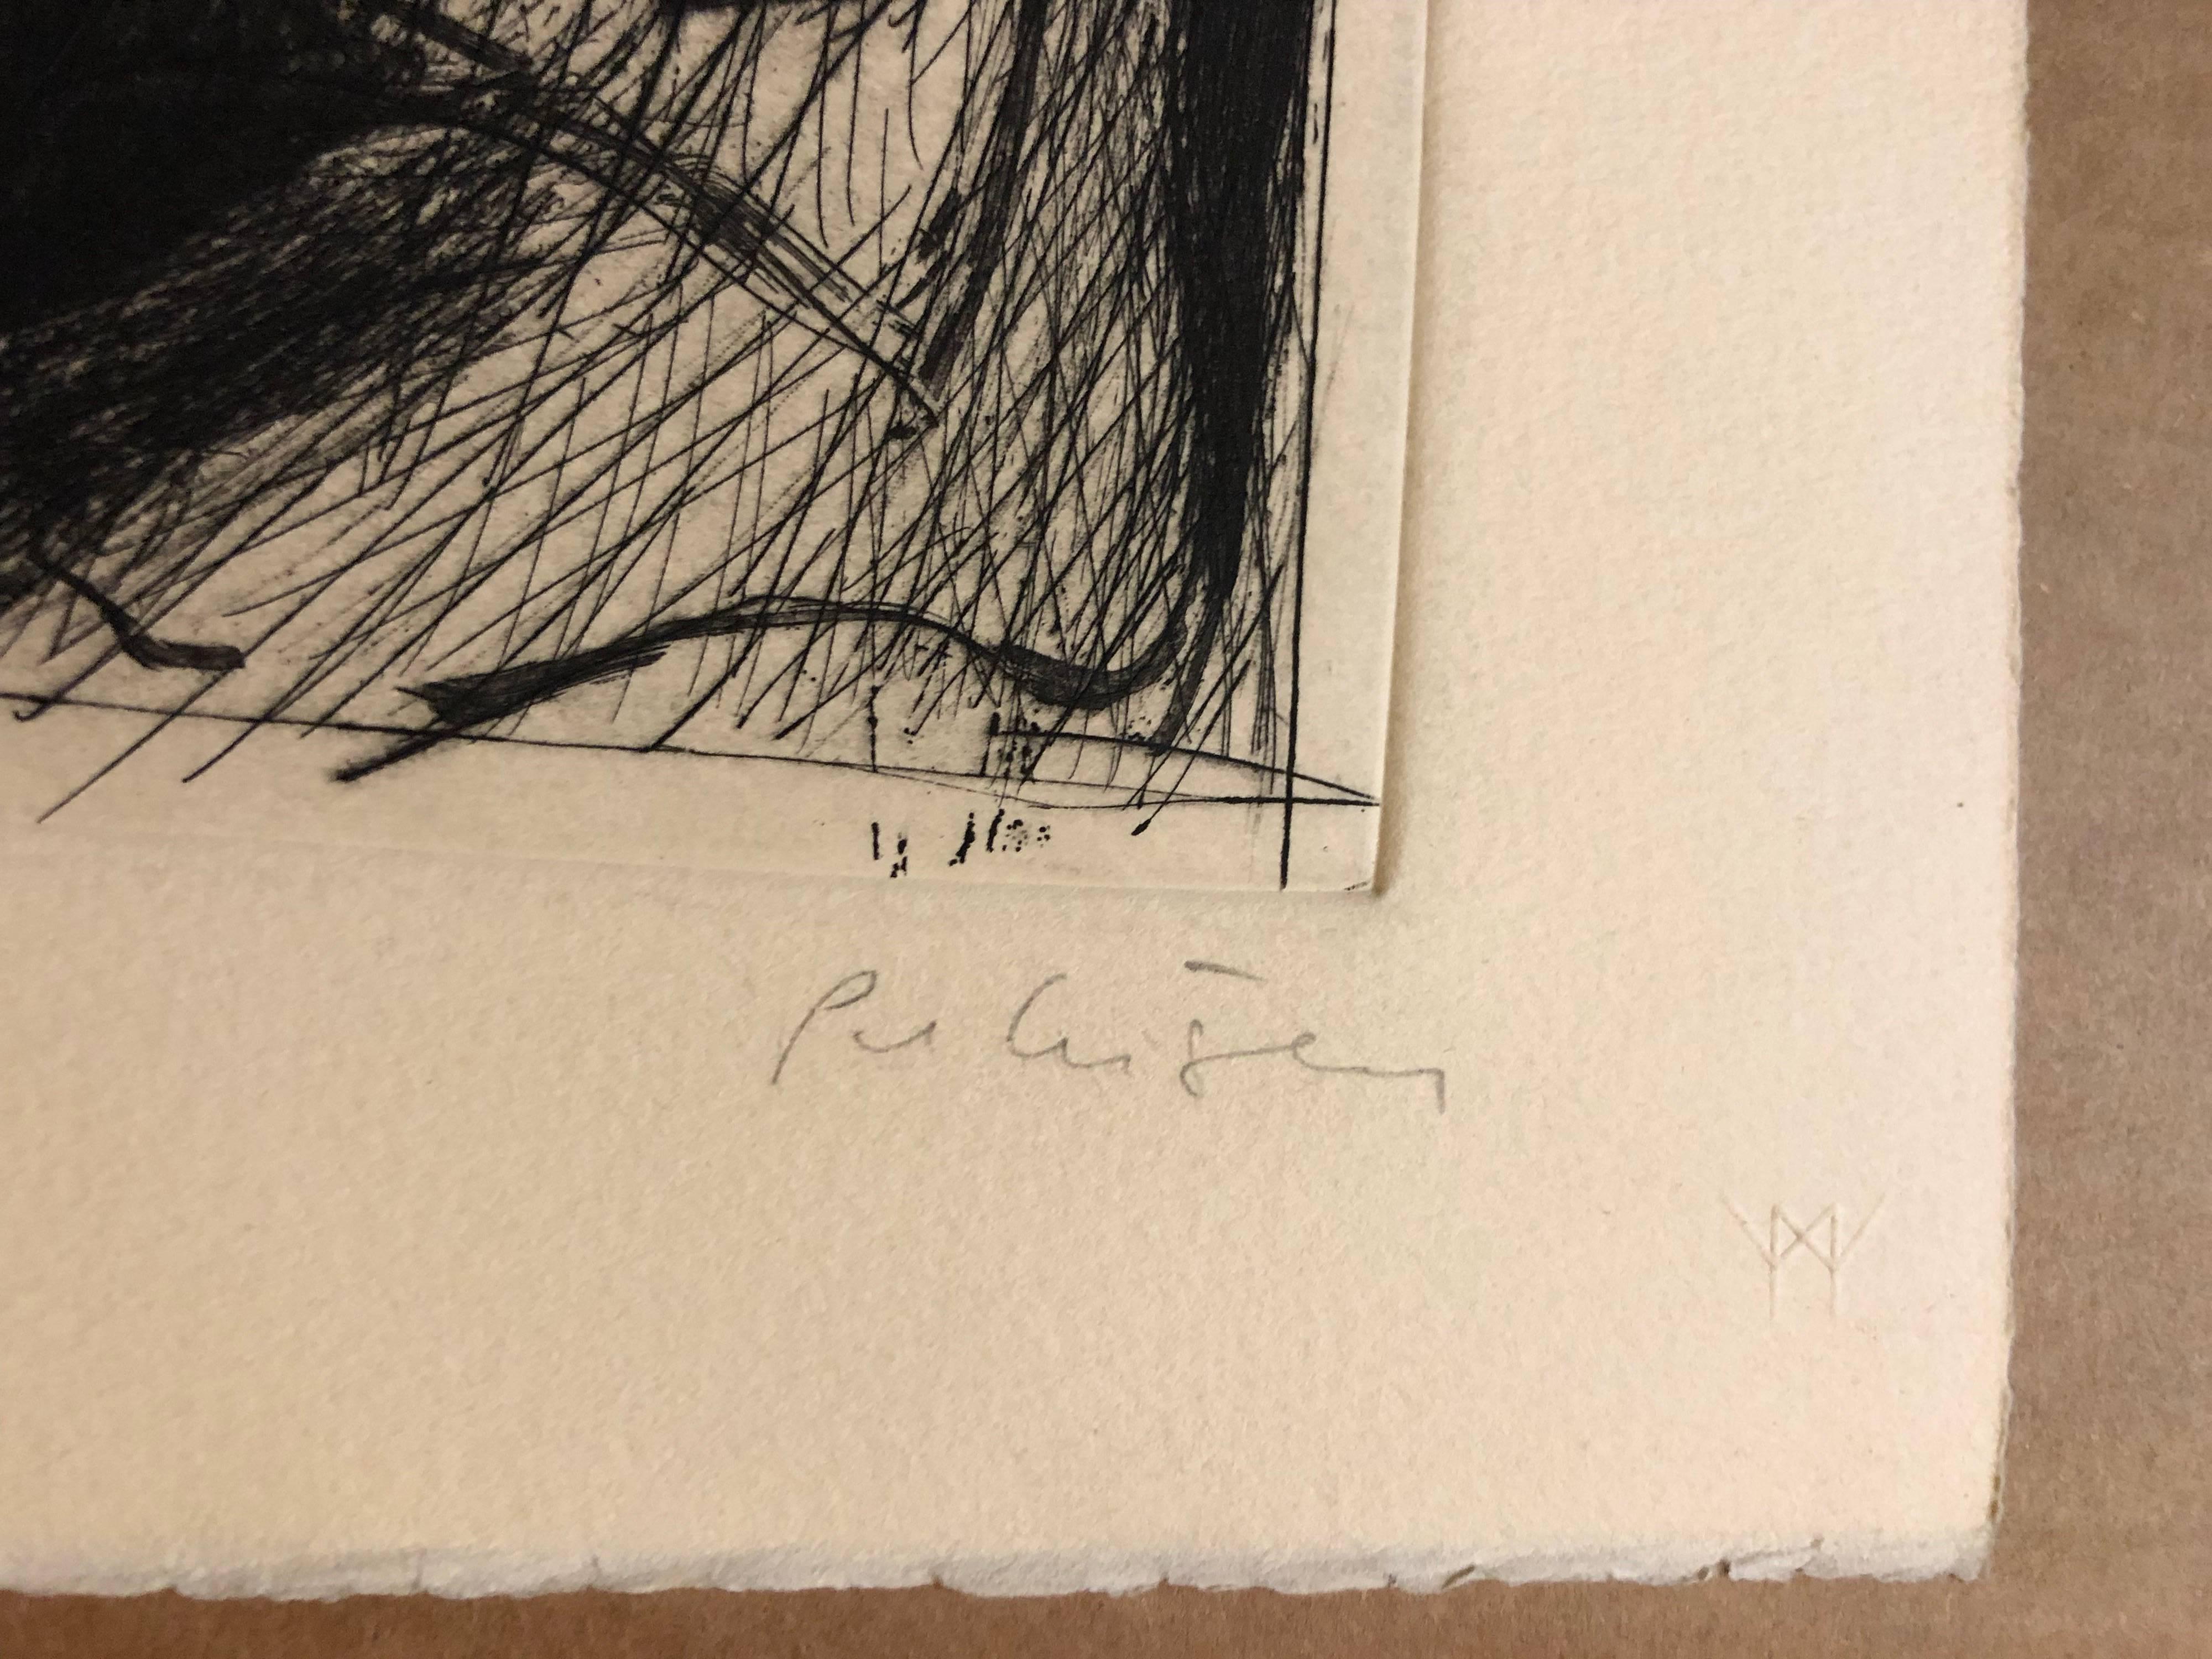 Will Petersen, ein Maler, Druckermeister und Dichter, wurde geboren in
Chicago. (Amer. 1928-1994) schuf diese limitierte Auflage einer Radierung auf Arches-Papier bei
das Lakeside Studio.

Der LITHOGRAPH PRINT stammt aus einer limitierten Auflage